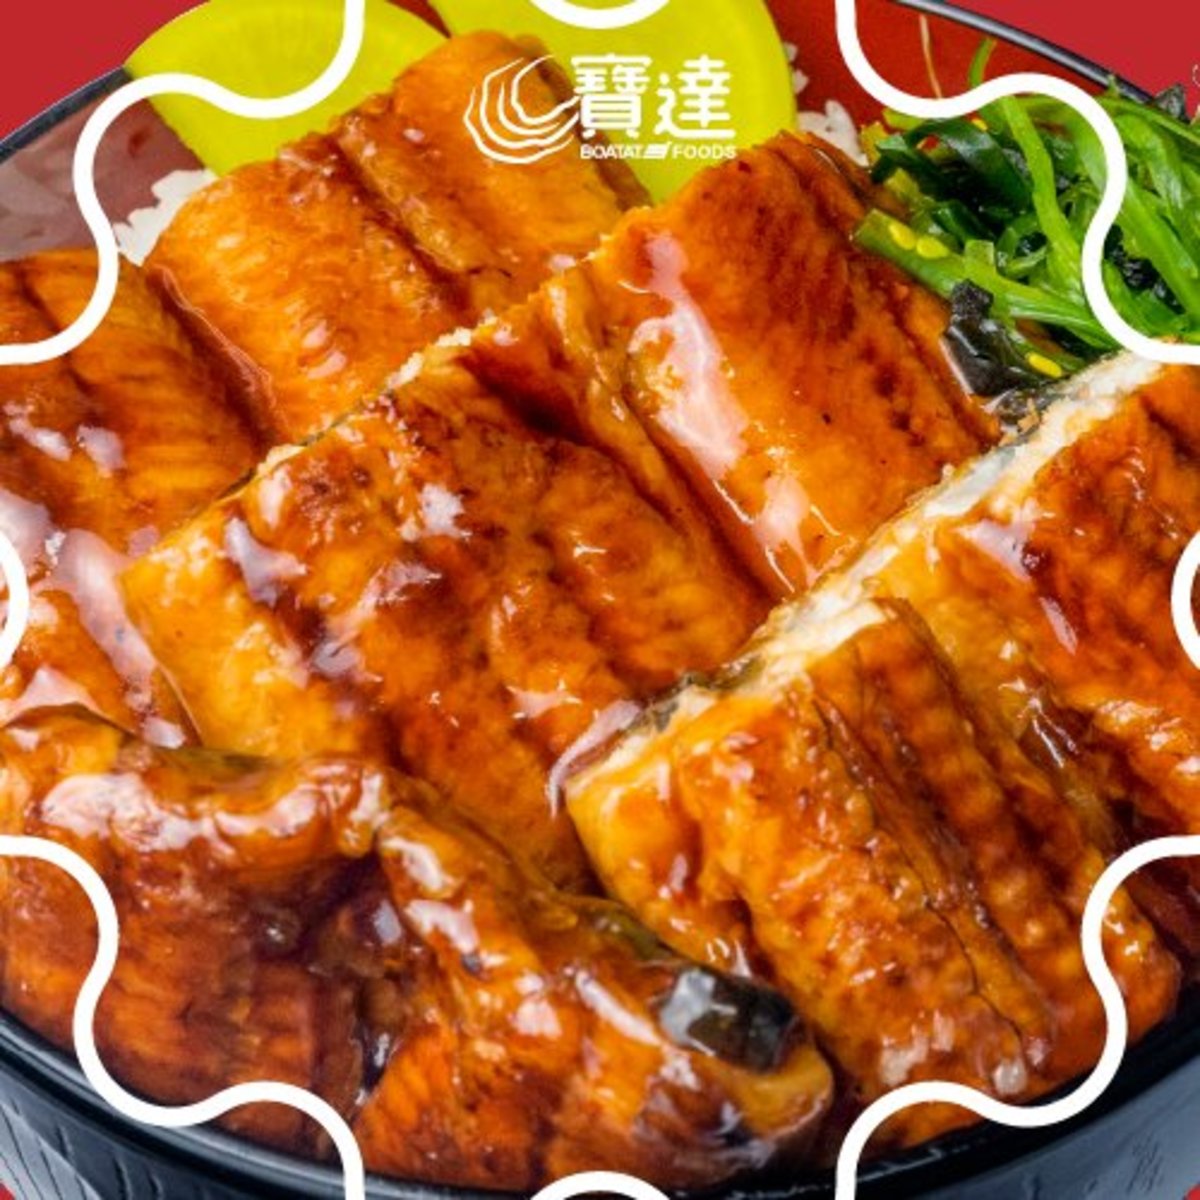 日式蒲燒大鰻魚扒 (300g) (急凍-18°C)